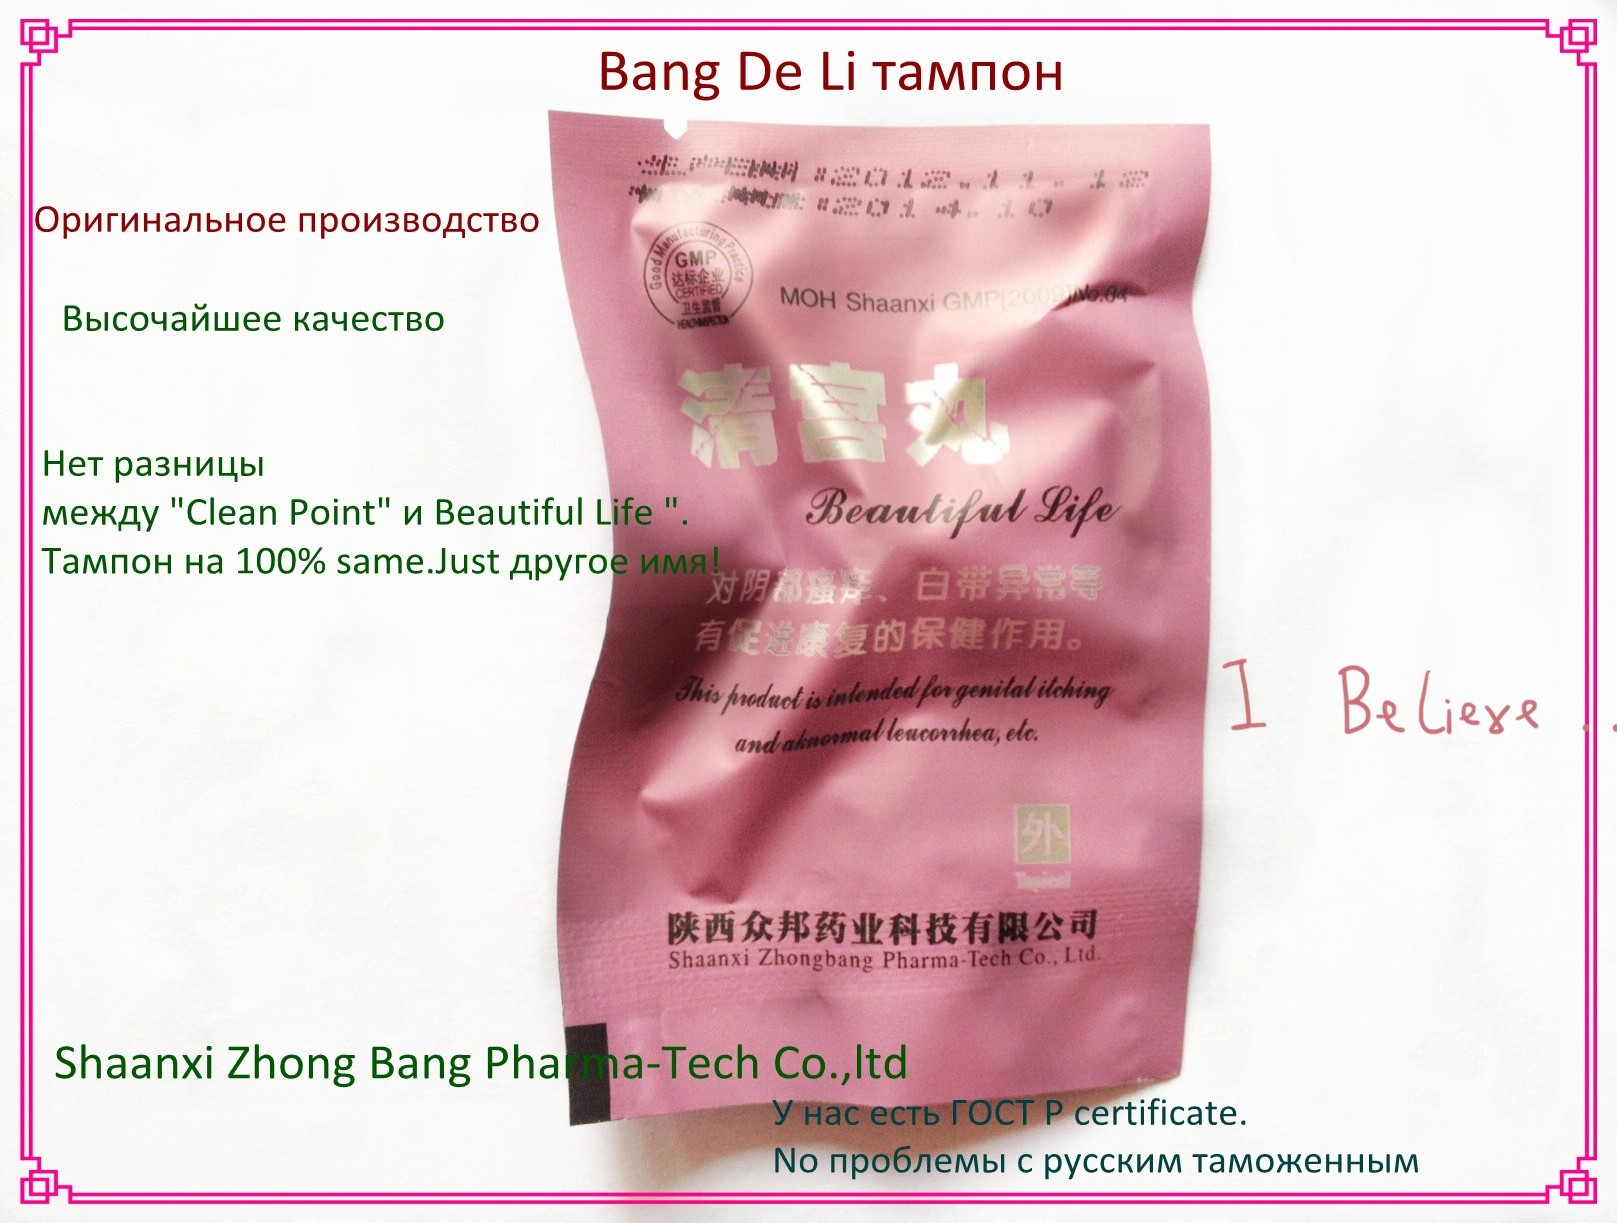 Bang De Li Qing Gong Wan Clean point tampons